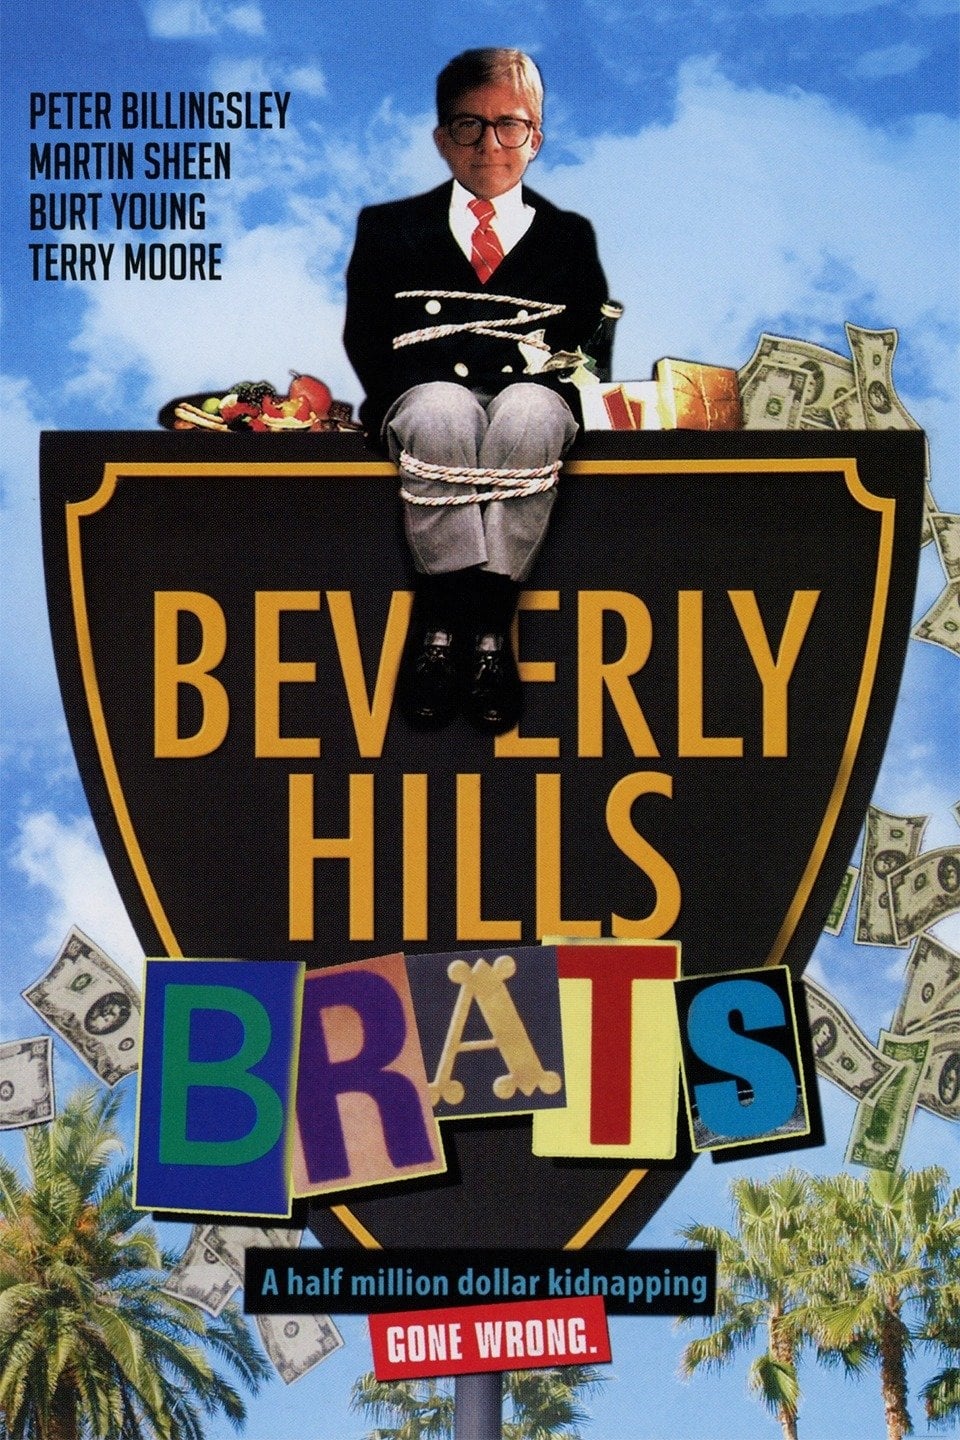 Plakat von "Beverly Hills Brats"